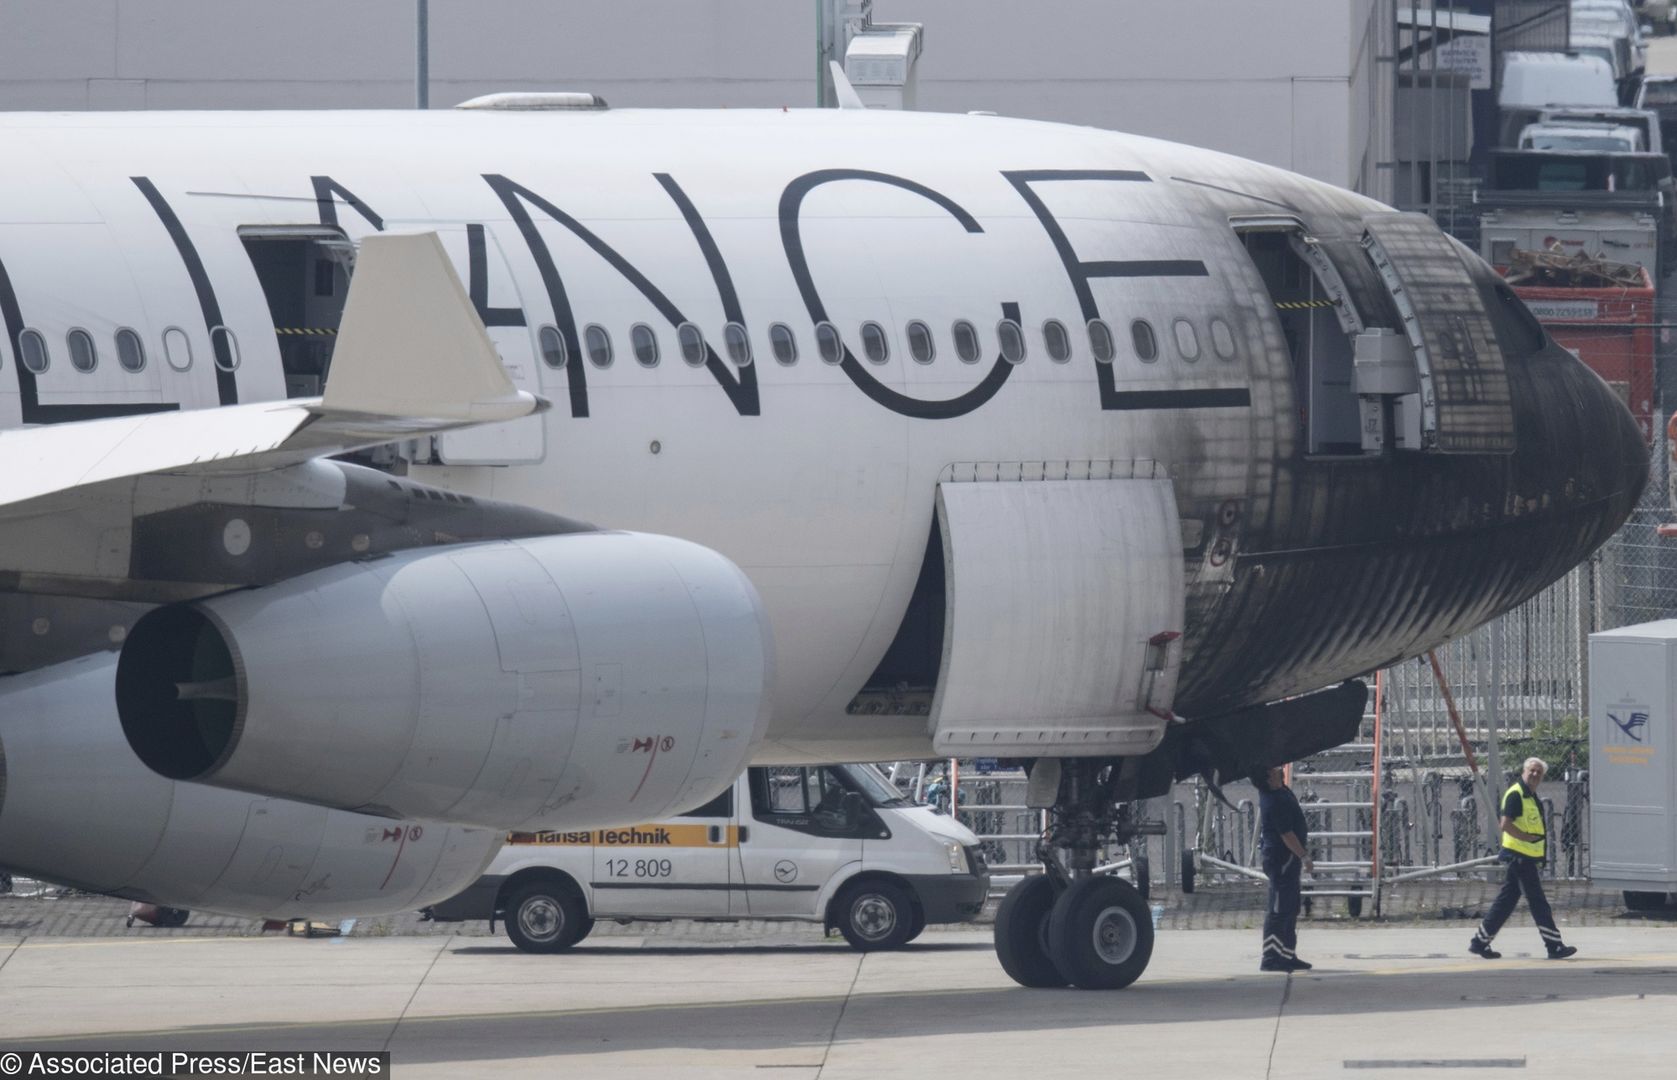 Airbus A340-300 jest poważnie uszkodzony